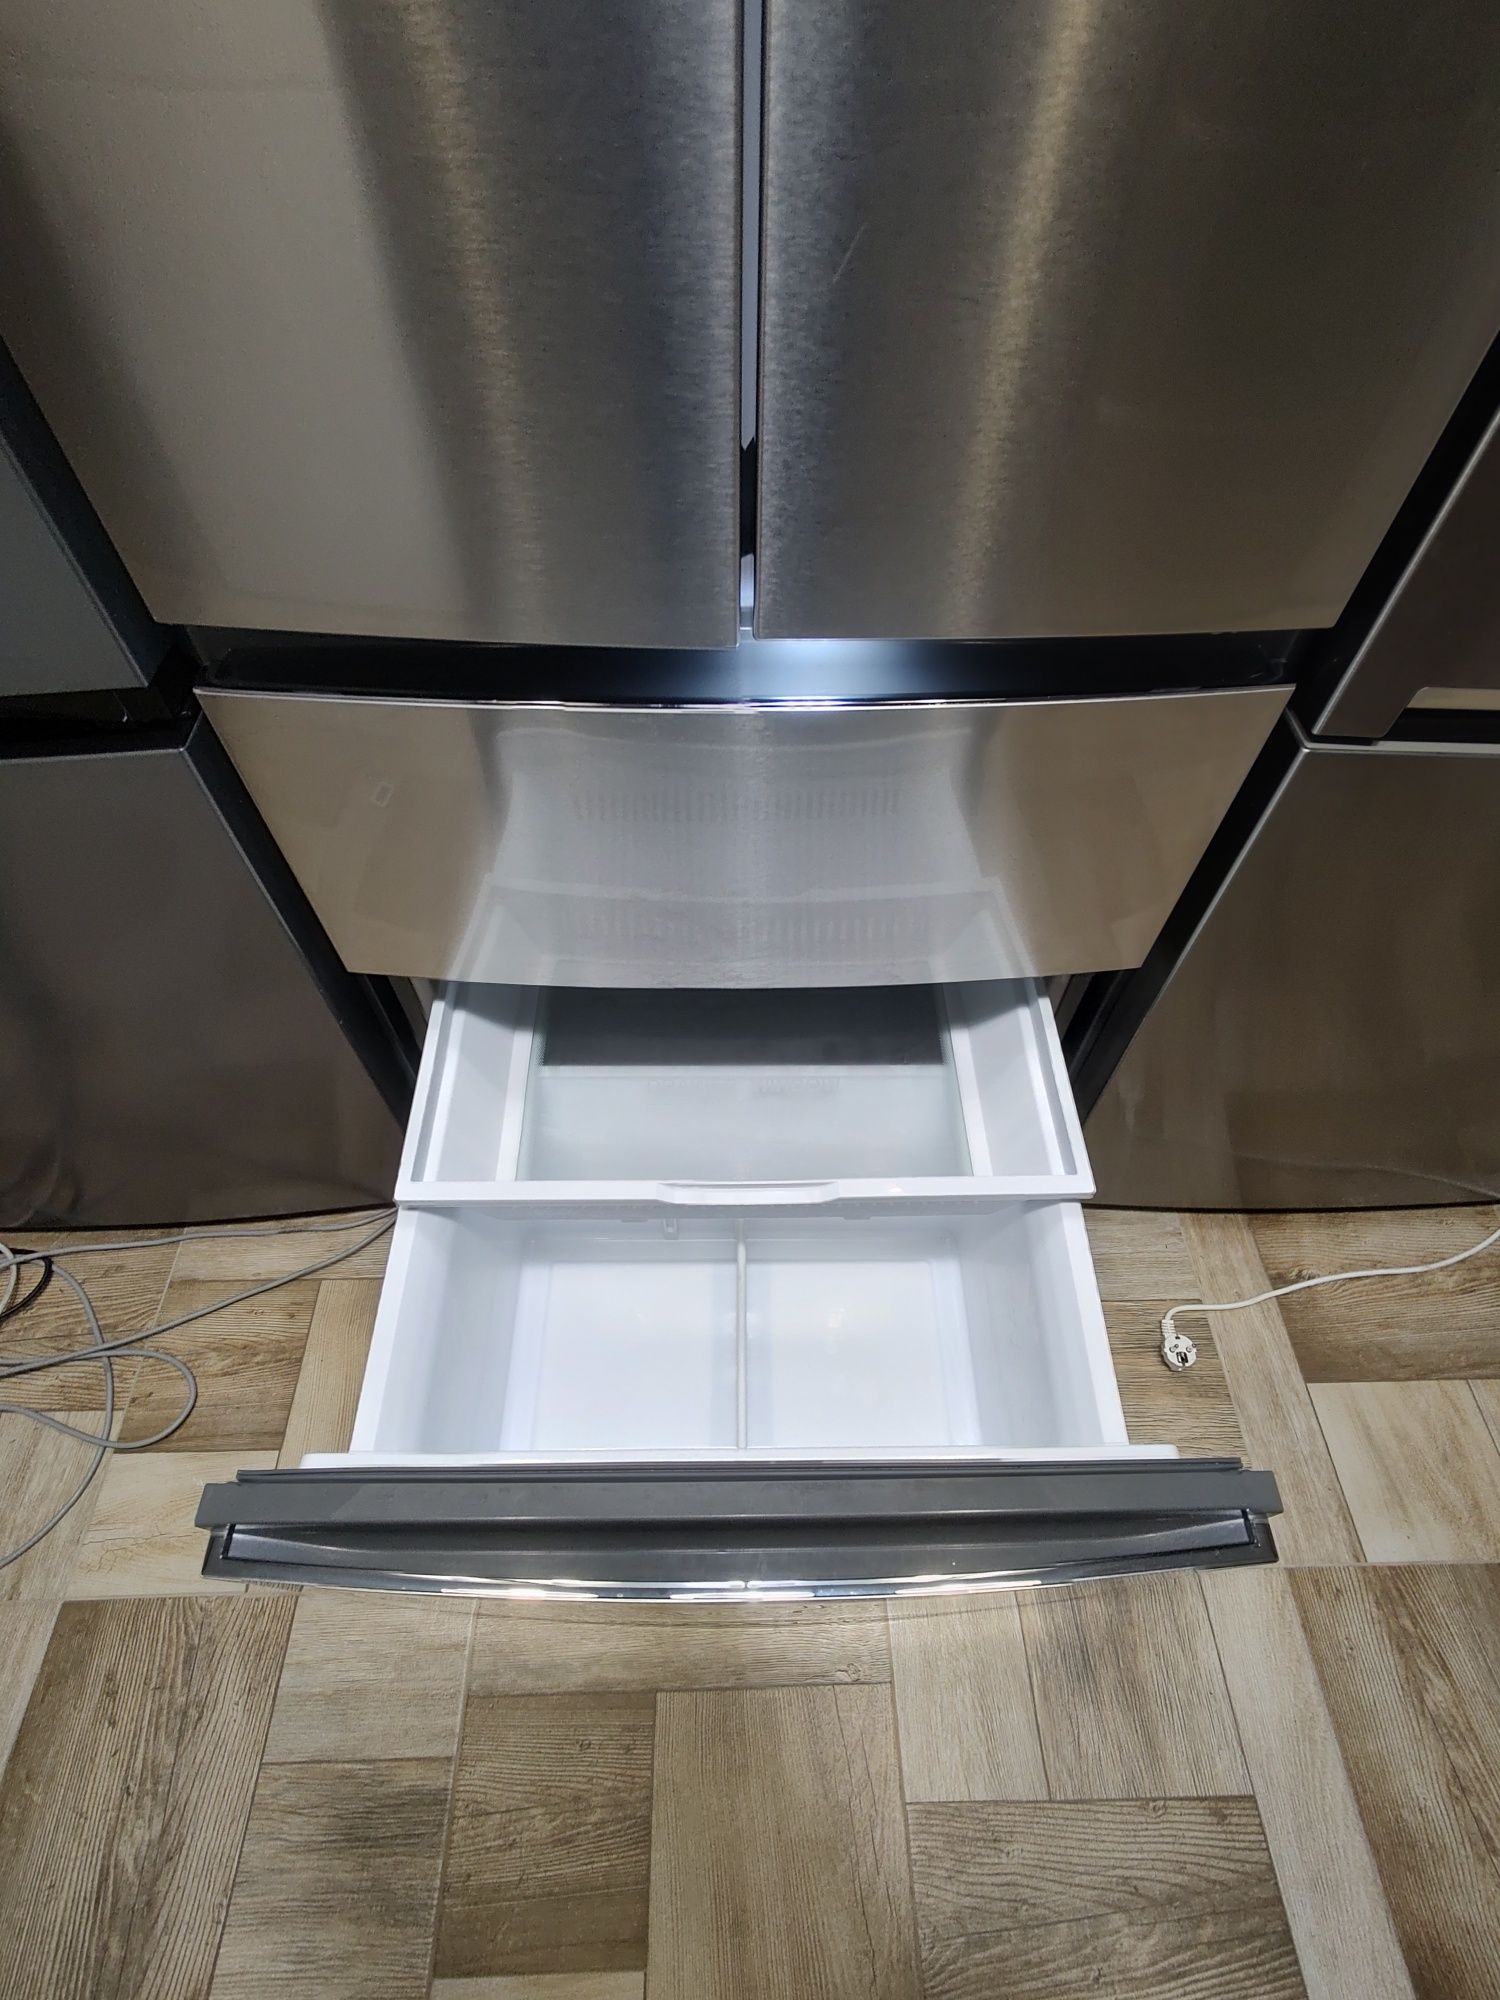 NoFrost Холодильник фірми Haier, висотою 190 см,  з Німеччини